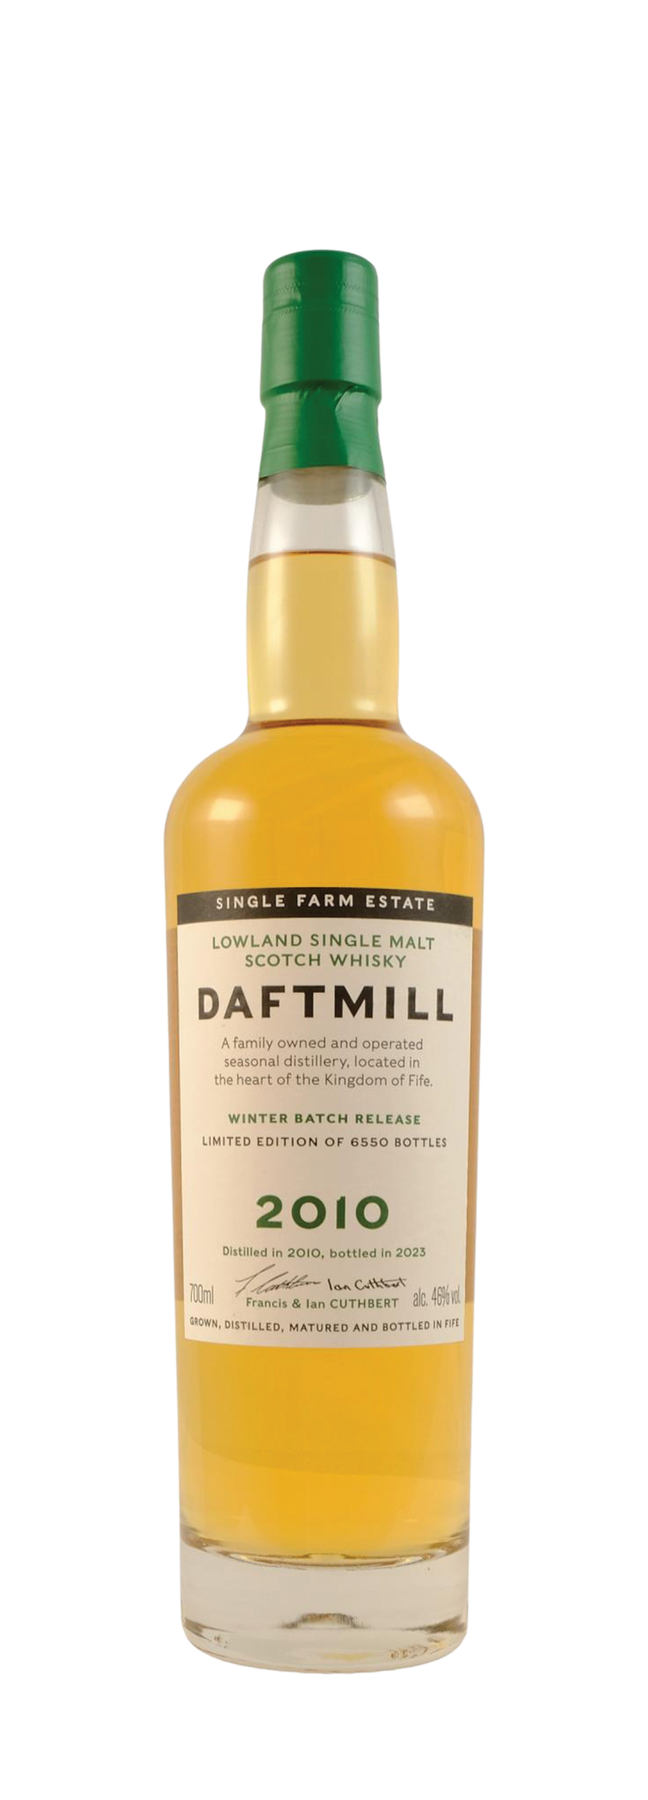 Daftmill Winter Release 46% 2010 70cl